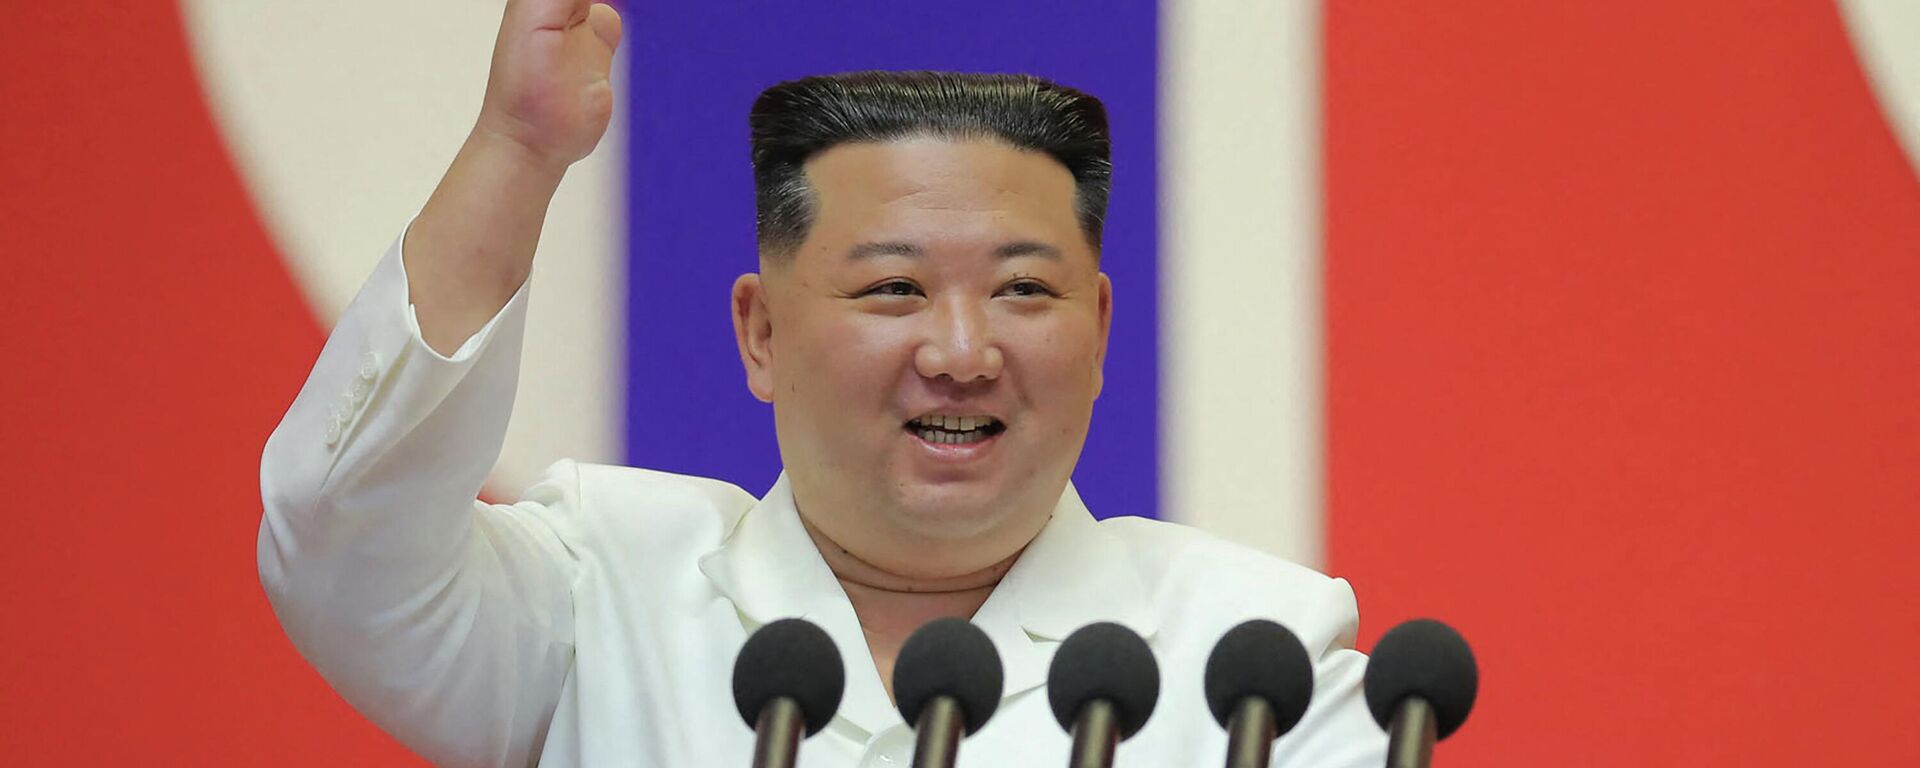 زعيم كوريا الشمالية، كيم جونغ أون، يلقي خطابا لتهنئة أعضاء القسم الطبي العسكري بالجيش الشعبي الكوري على المساهمة في منع انتشار (كوفيد-19) في بيونغ يانغ، 18 أغسطس/ آب 2022 - سبوتنيك عربي, 1920, 11.04.2023